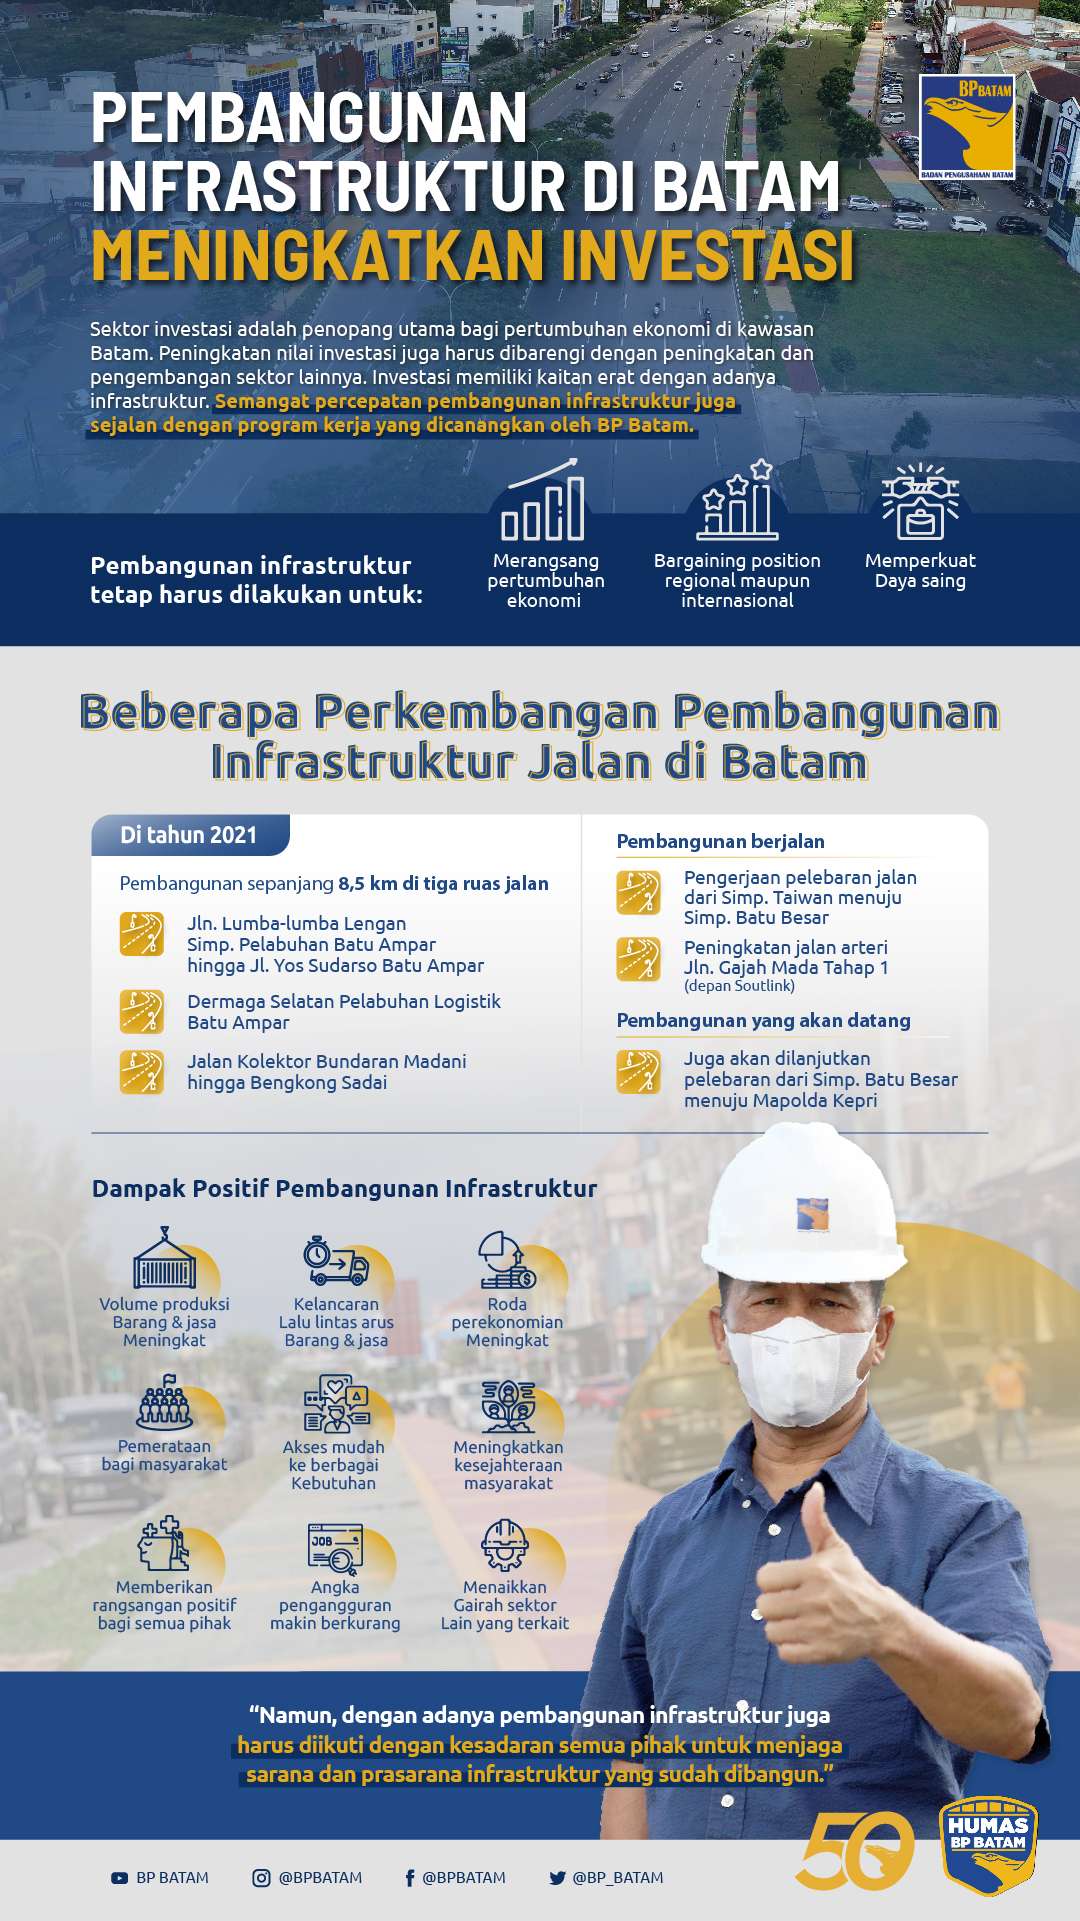 Pembangunan Infrastruktur di Batam Meningkatkan Investasi